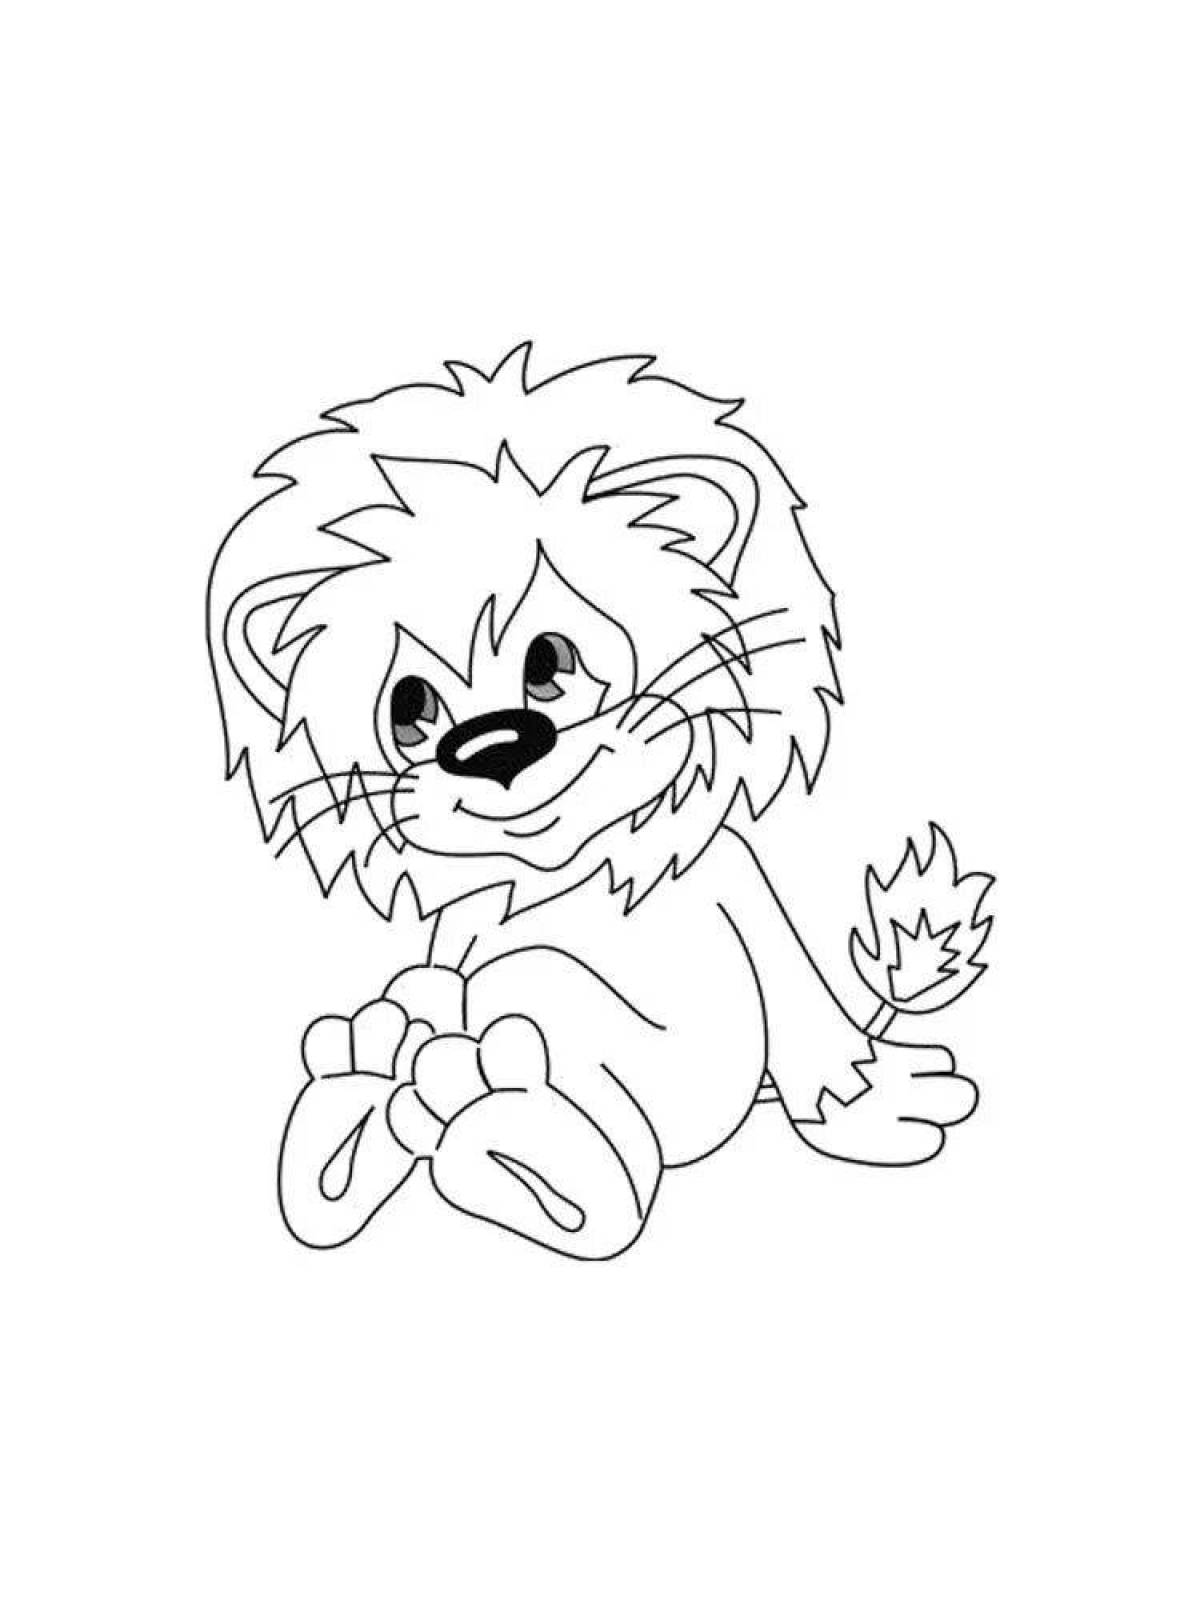 Coloring playful lion cub